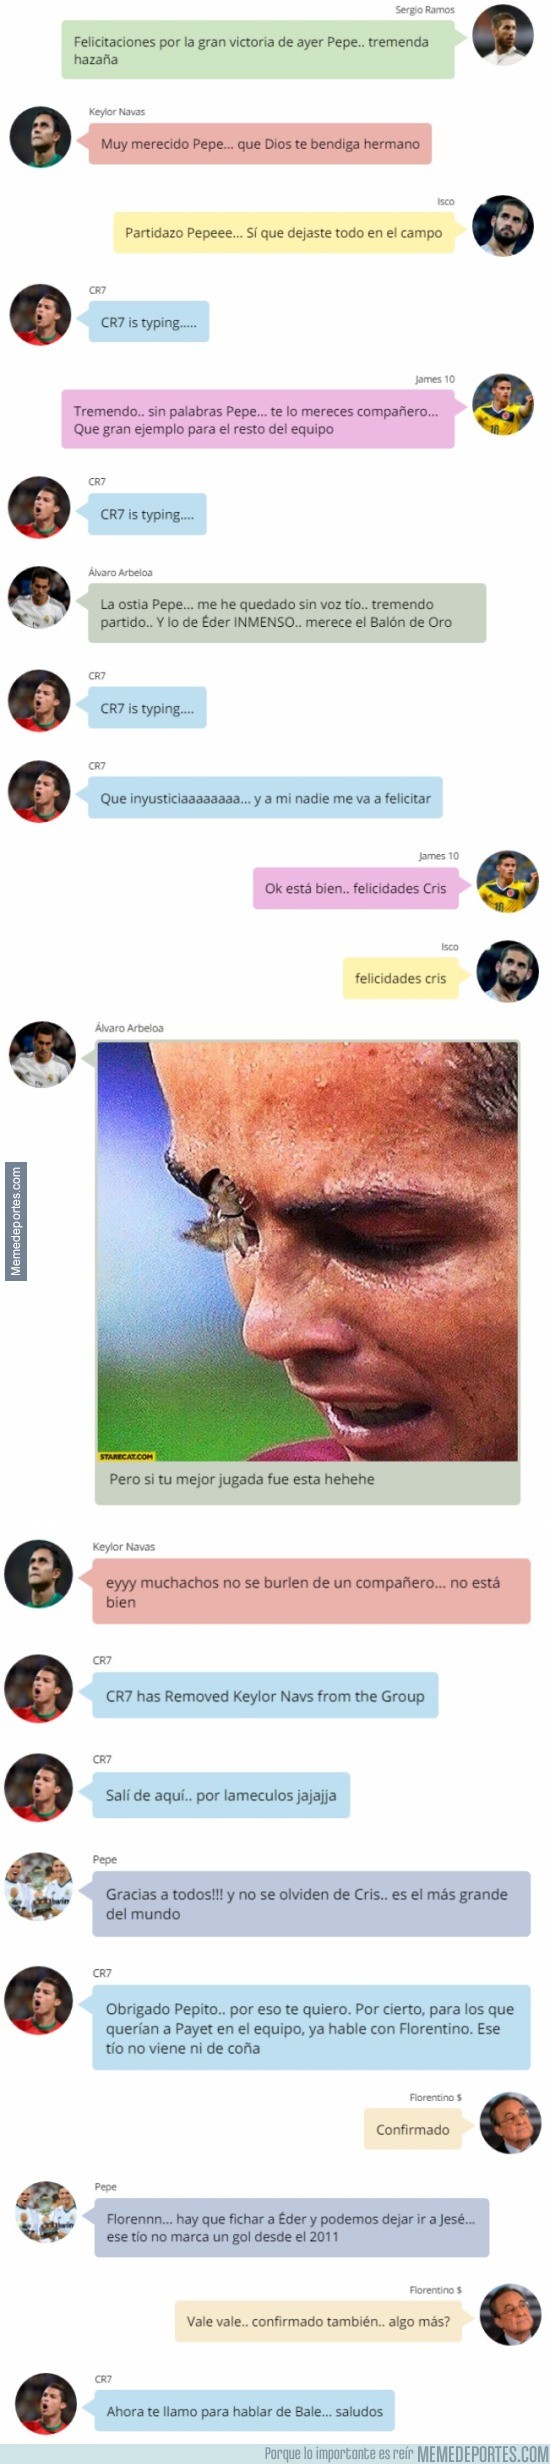 889419 - Los jugadores del Real Madrid felicitan a Pepe e ignoran a CR7 en Whatsapp